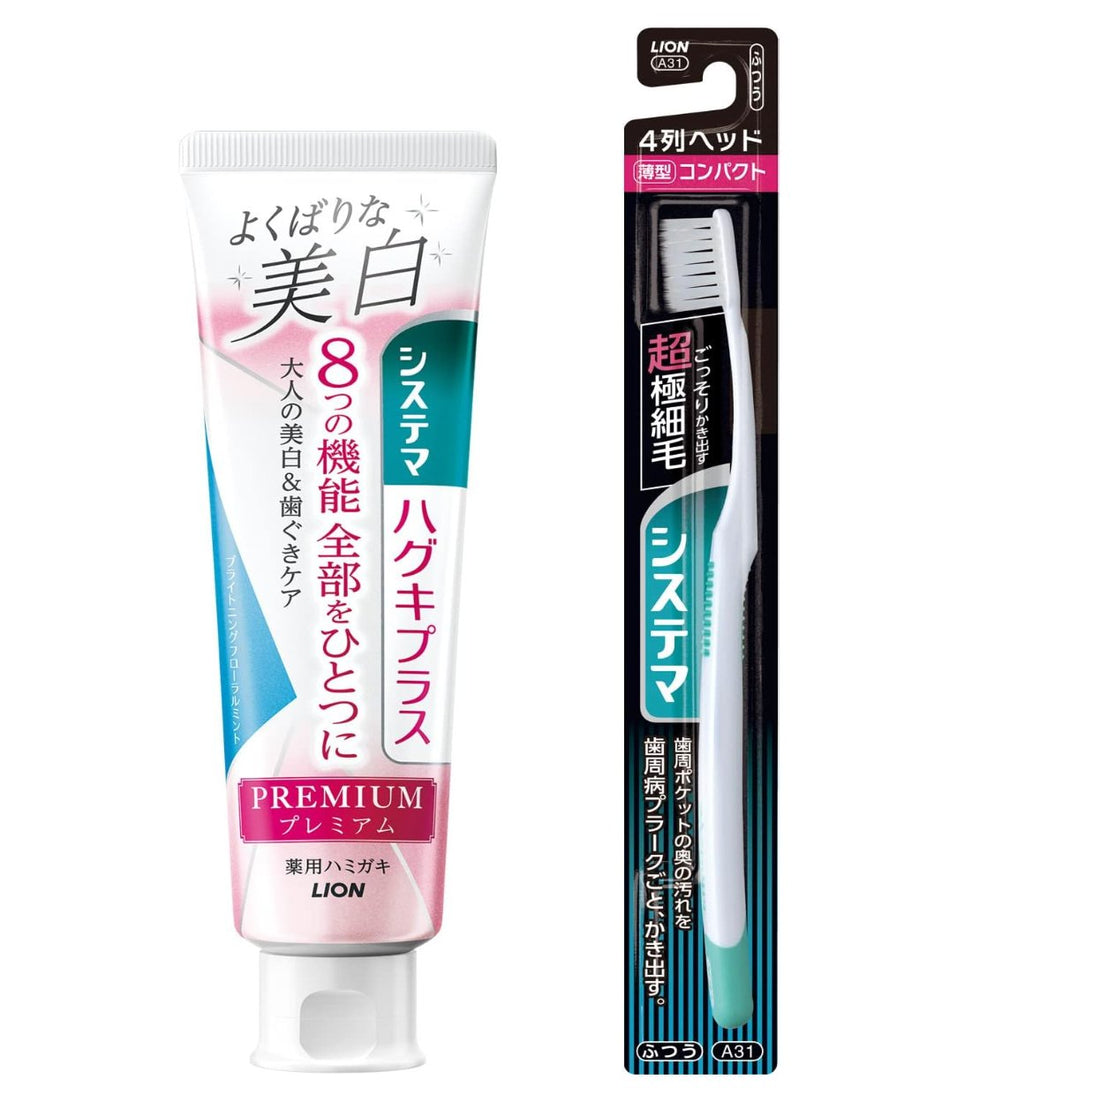 Systema Haguki Plus [Quasi-drug] Premium Toothpaste Delicate Whitening Brightening Floral Mint Toothpaste Whitening Periodontal Disease Fluorine 95g + Toothbrush Included - NihonMura